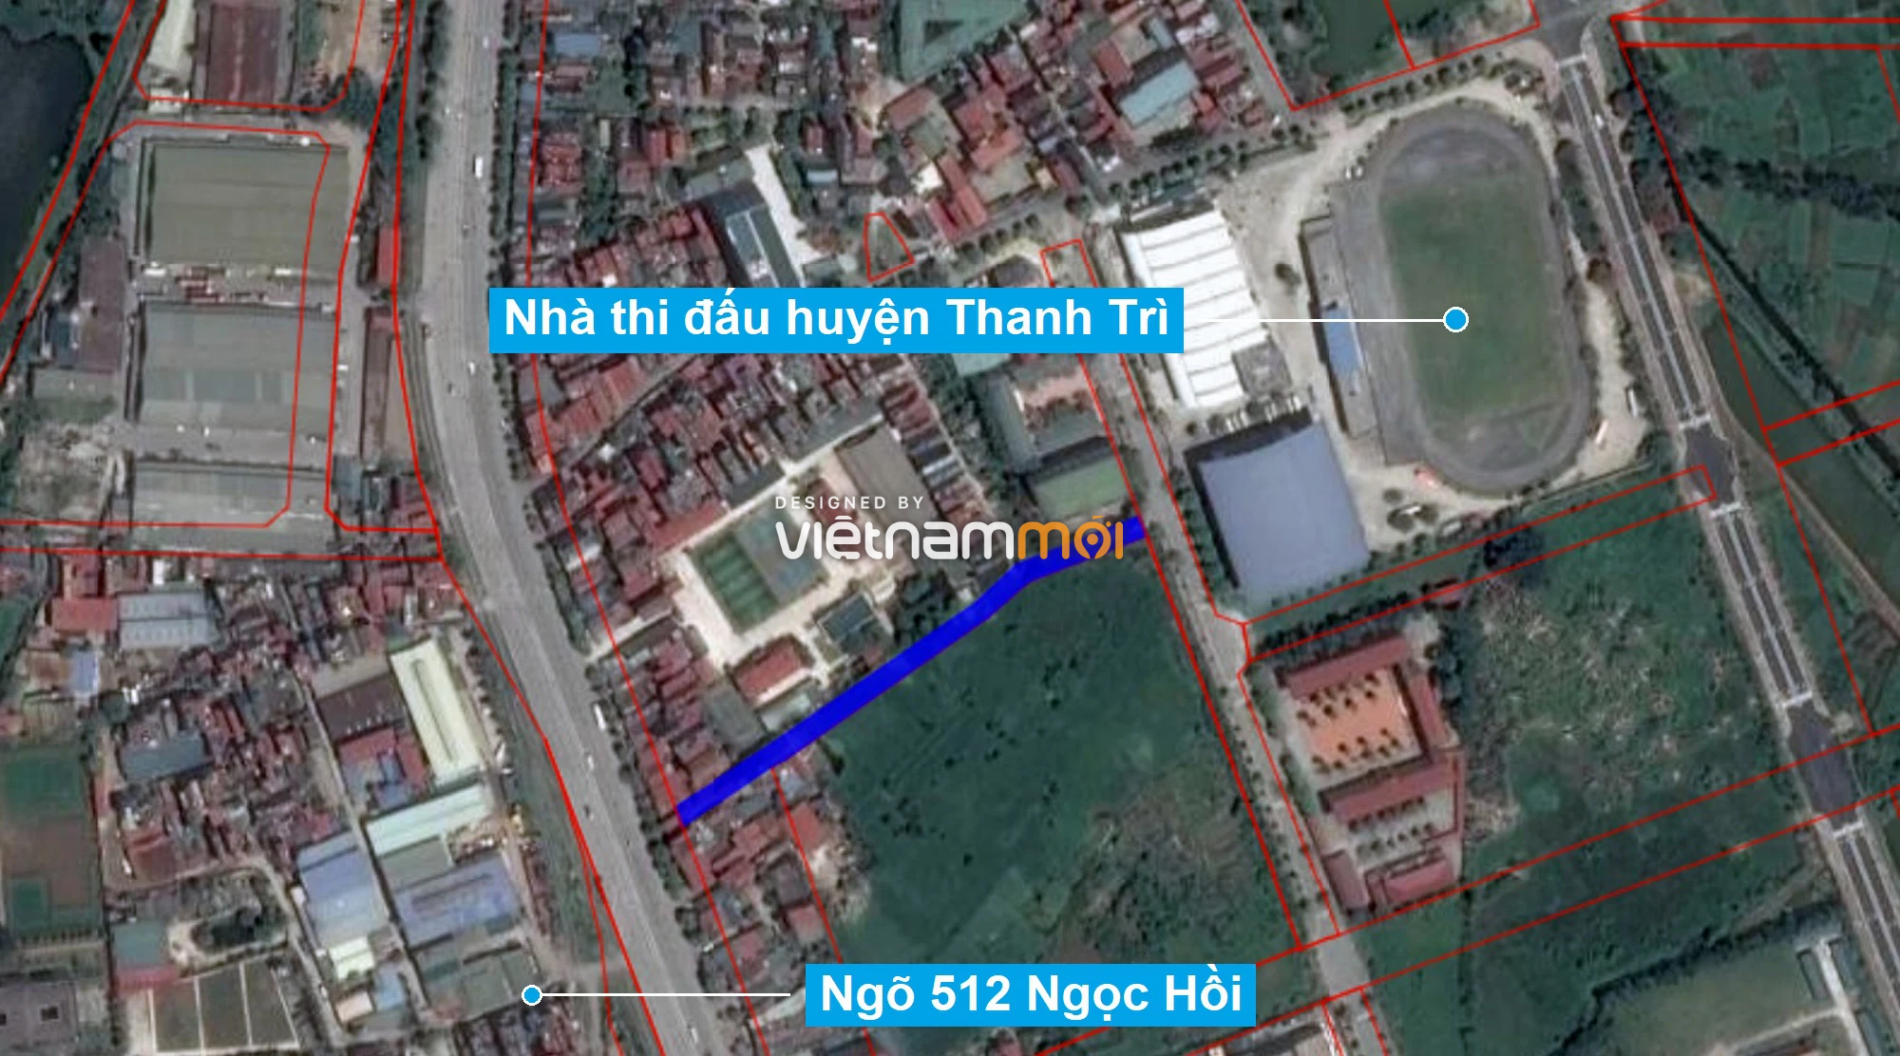 Những khu đất sắp thu hồi để mở đường ở xã Tứ Hiệp, Thanh Trì, Hà Nội (phần 3) - Ảnh 10.